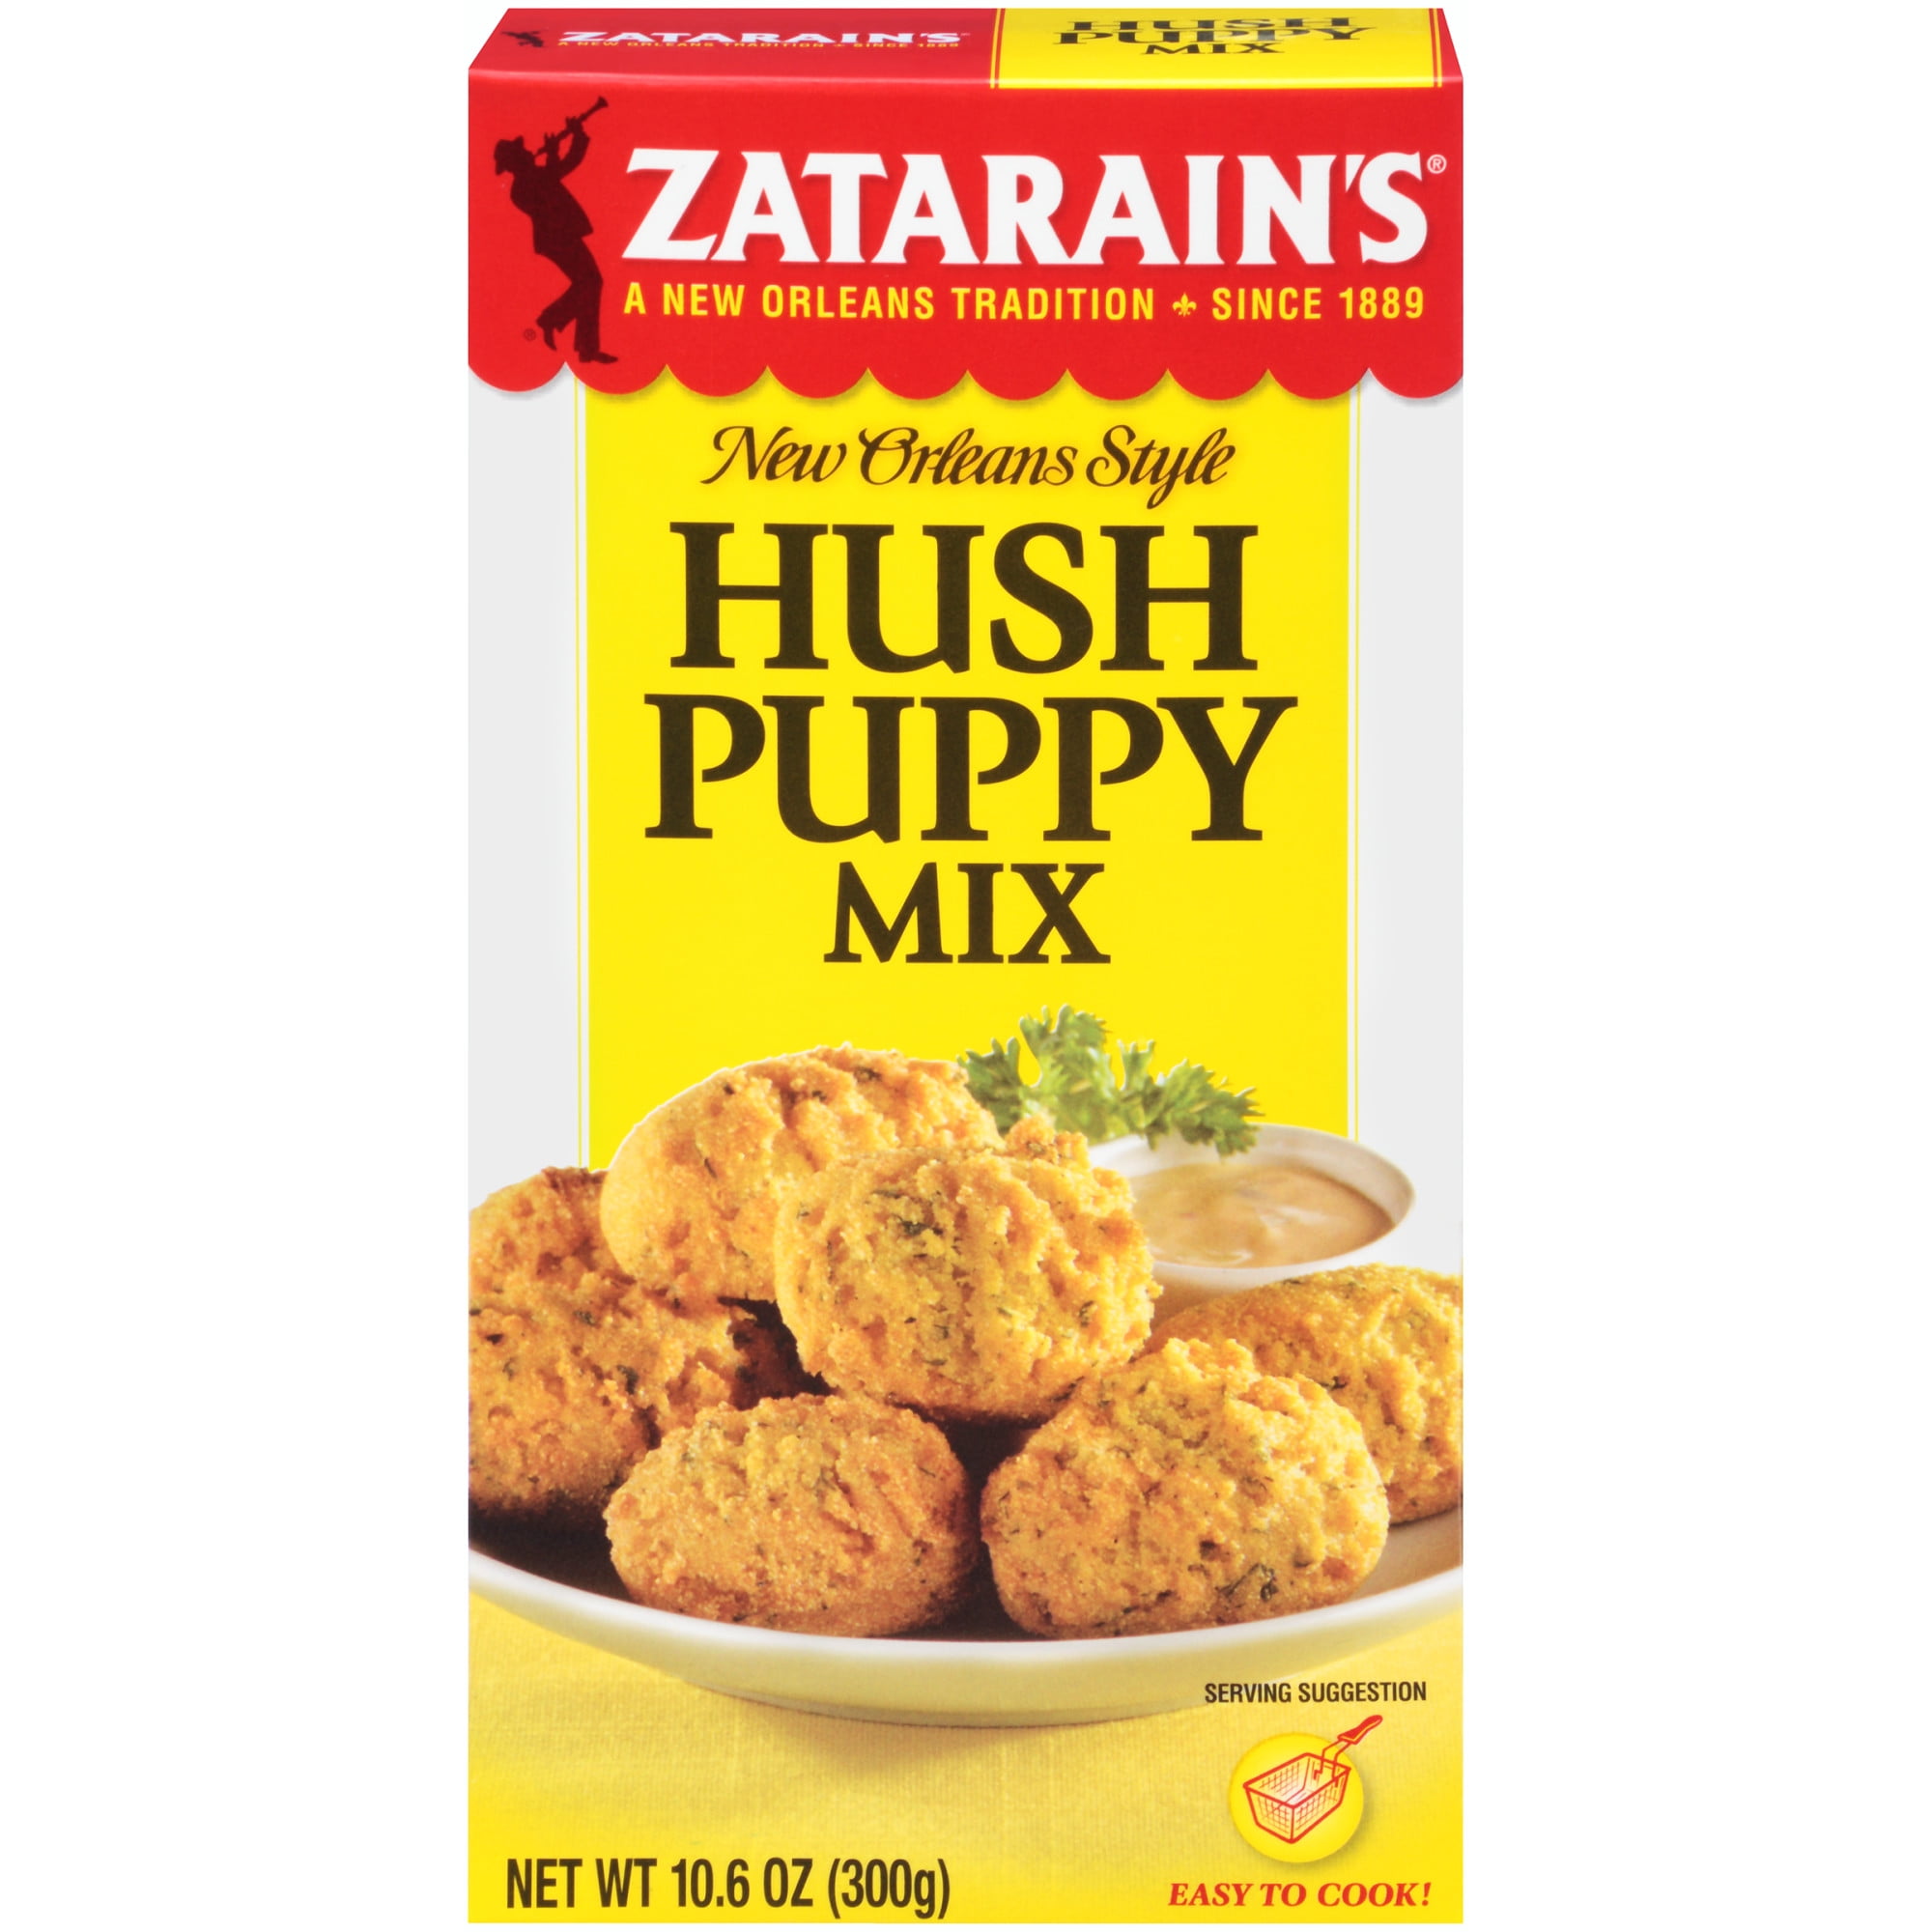 Philadelphia kontakt undgå 5 Pack) Zatarain's Hush Puppy, 10.6 oz - Walmart.com